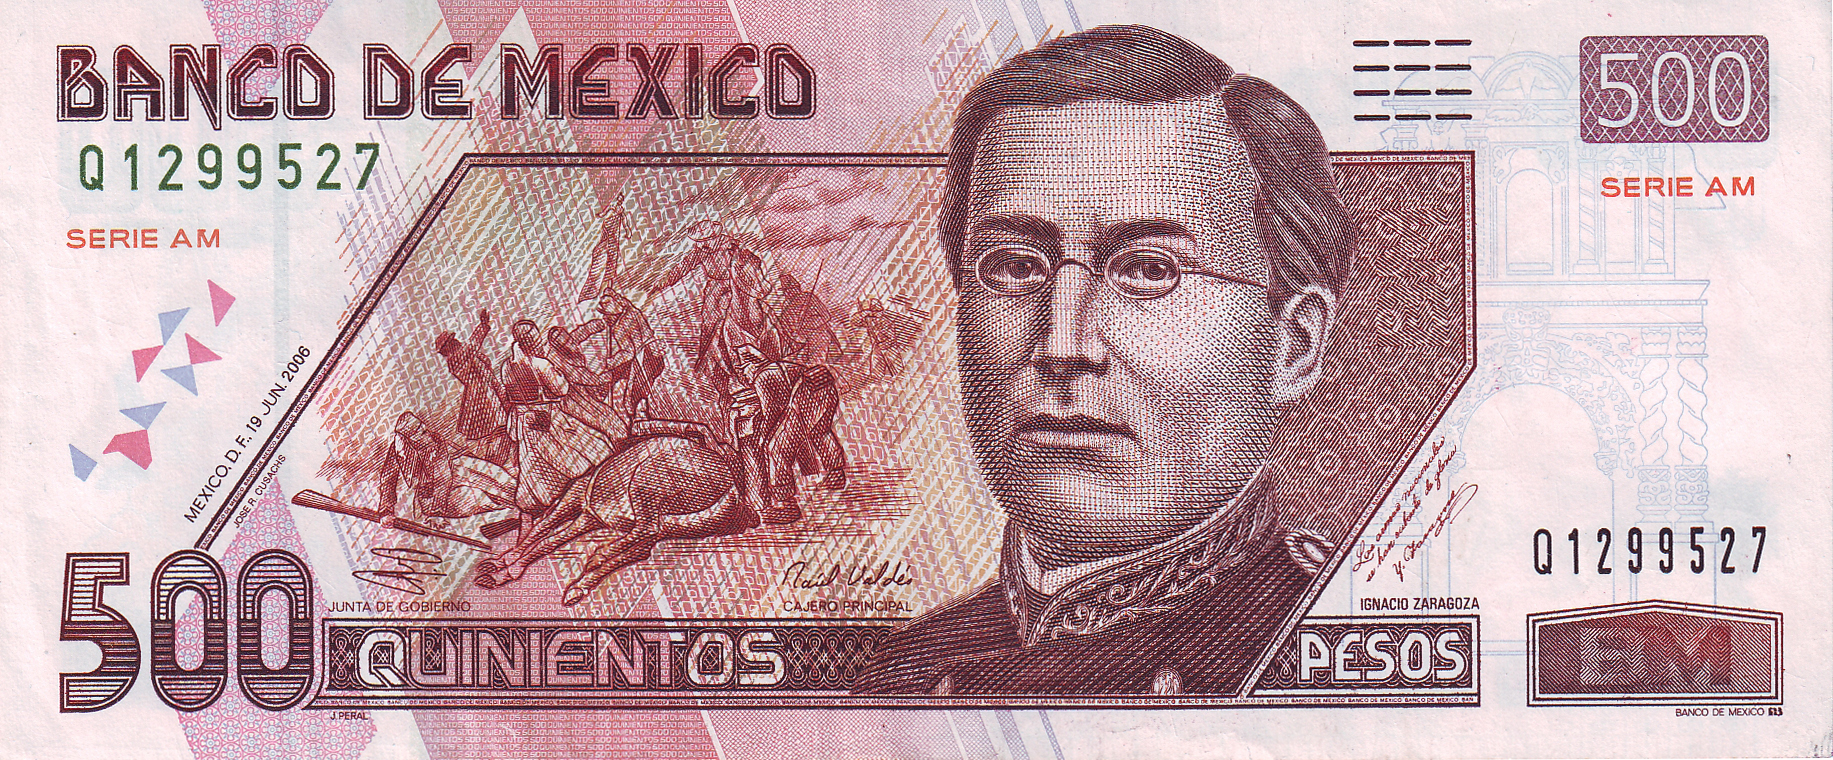 Mexico's 500-Peso note